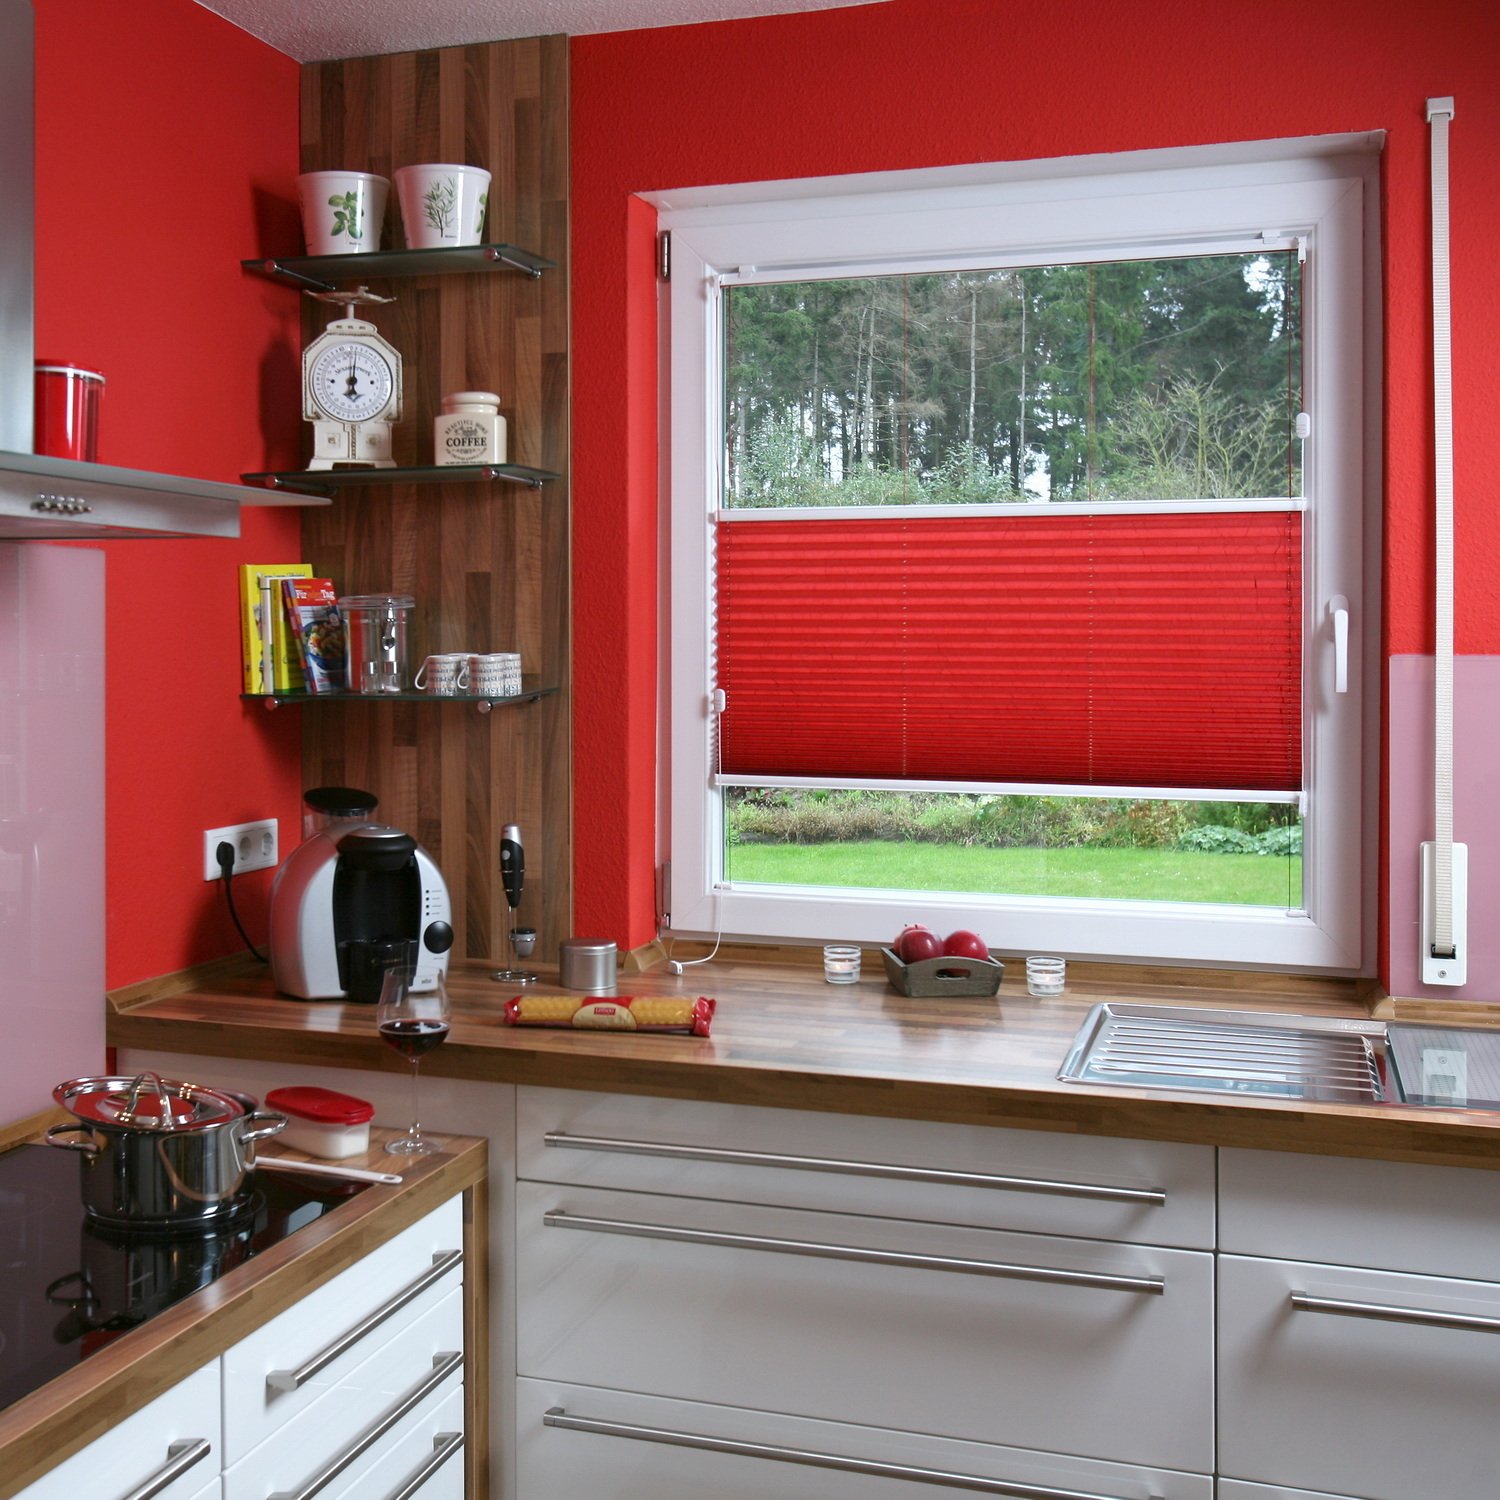 Жалюзи на окно на кухне фото: Жалюзи на кухню - фото 40 идей, какие жалюзи выбрать для кухни